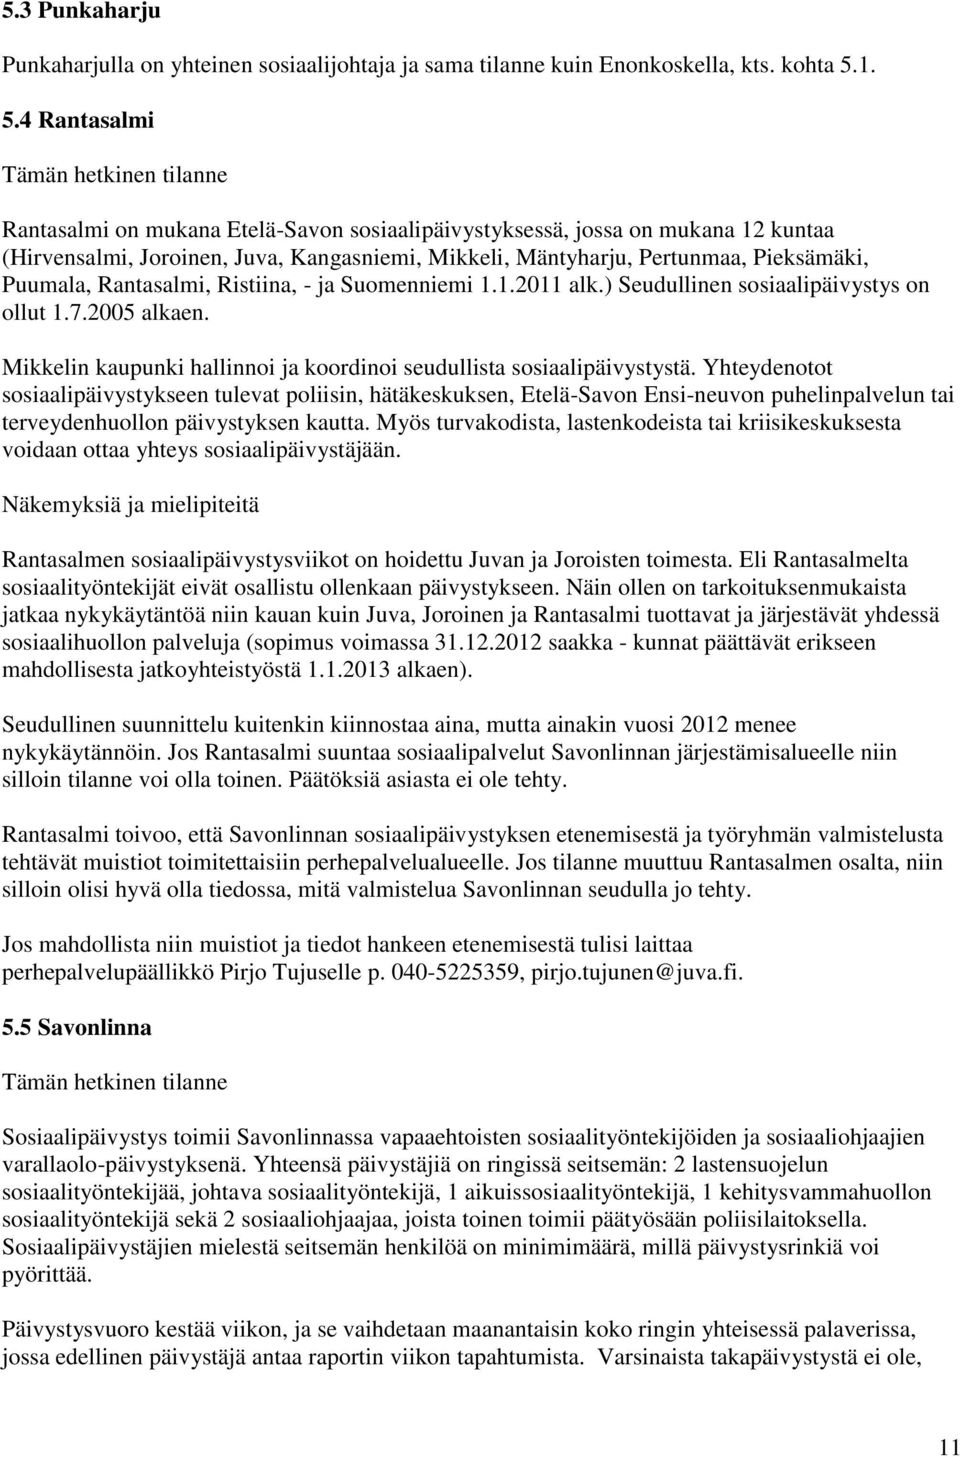 Pieksämäki, Puumala, Rantasalmi, Ristiina, - ja Suomenniemi 1.1.2011 alk.) Seudullinen sosiaalipäivystys on ollut 1.7.2005 alkaen.